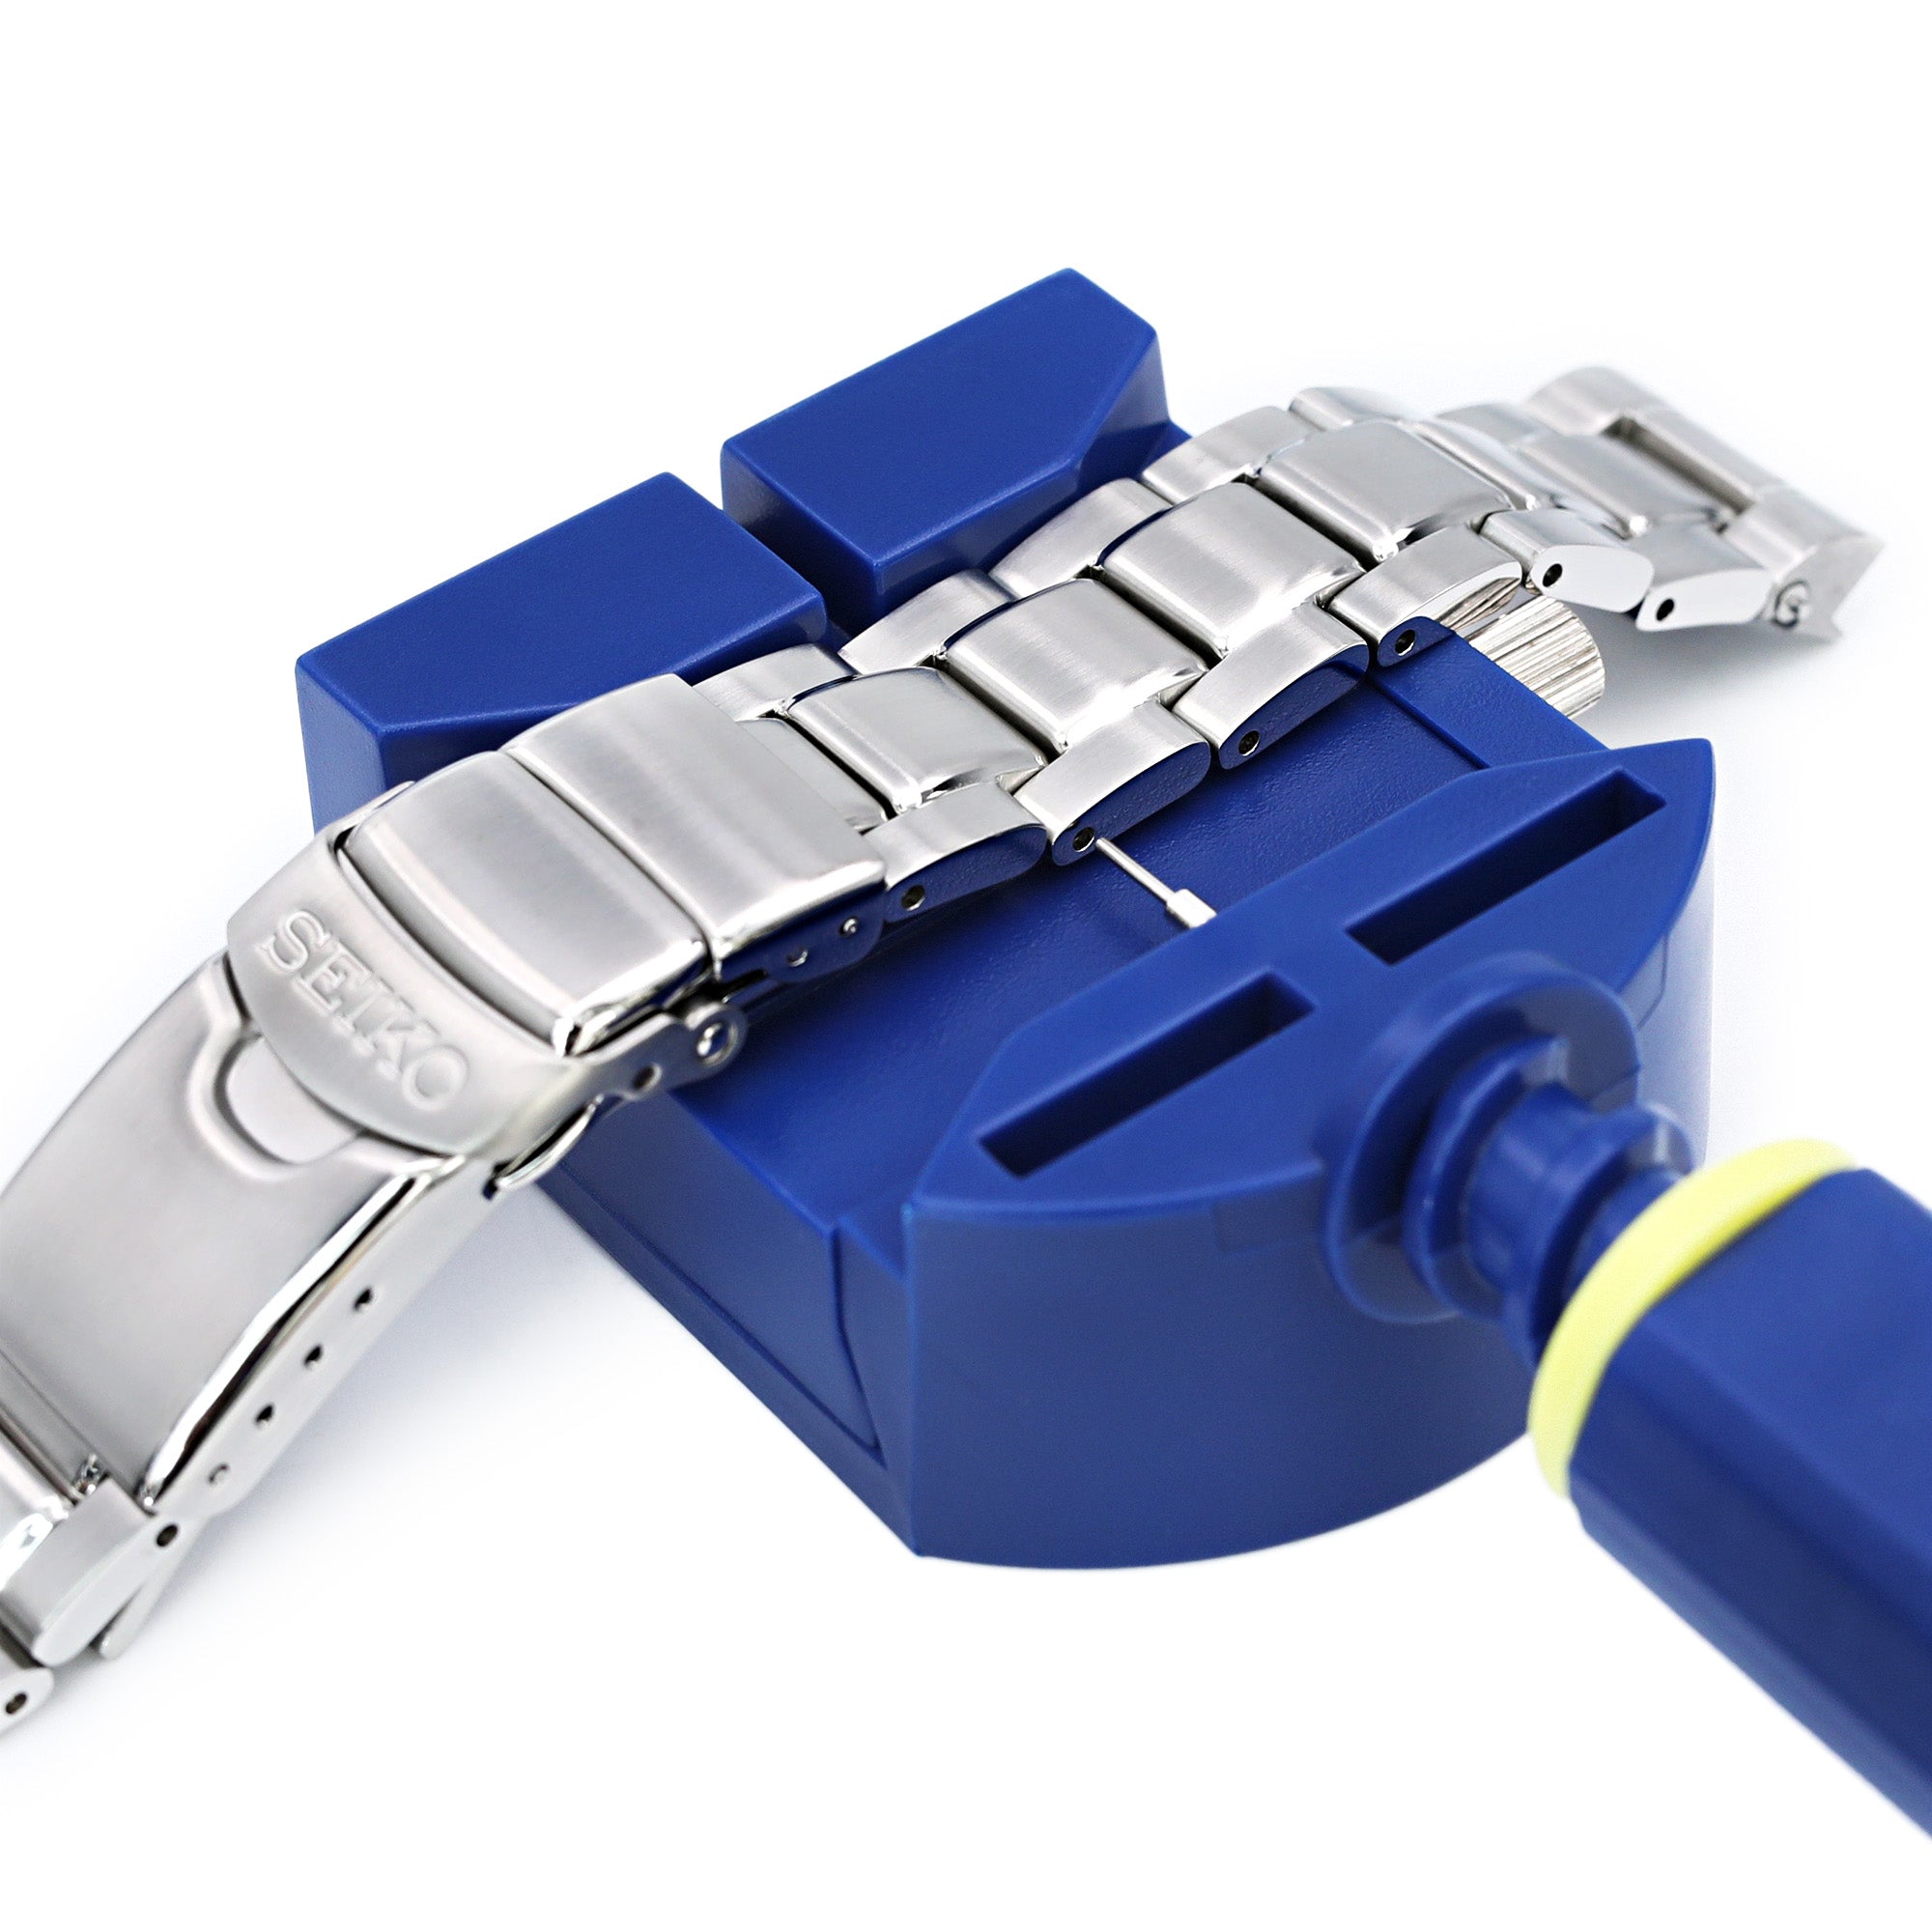 Watch bracelet link pin adjuster, link remover tool